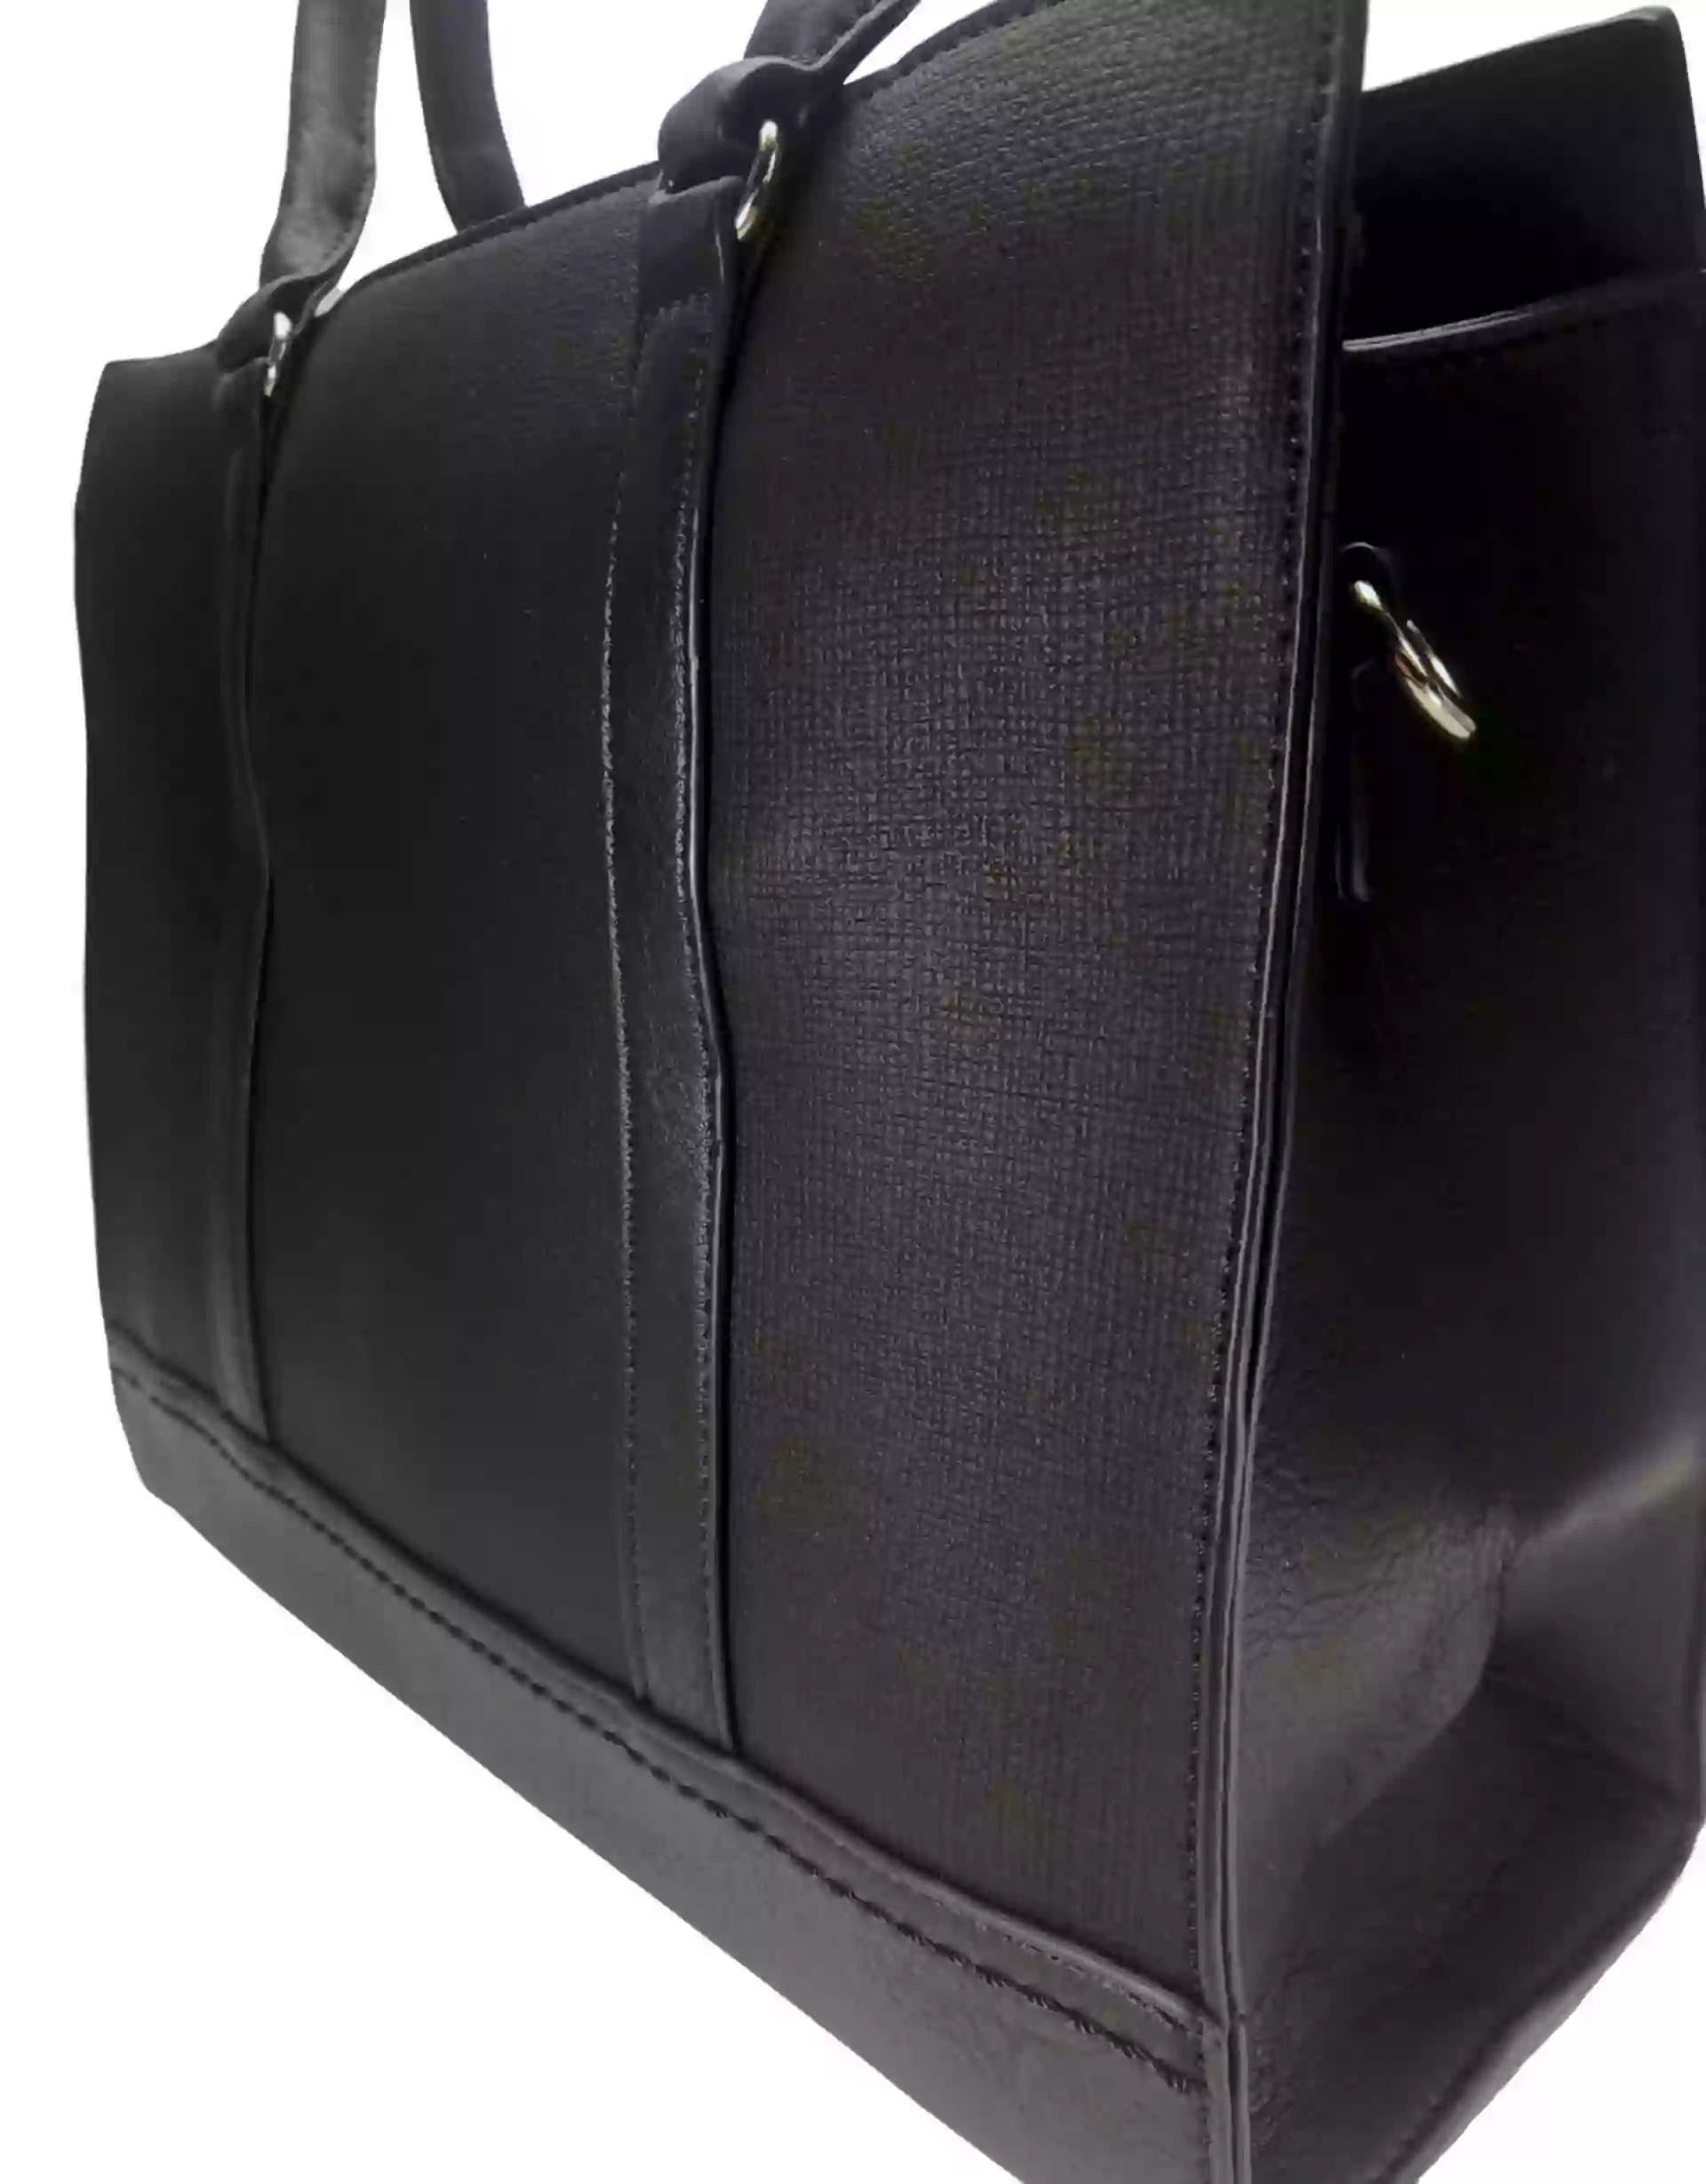 Elegantní business kabelka přes rameno, Tapple H181205, černá, detail kabelky